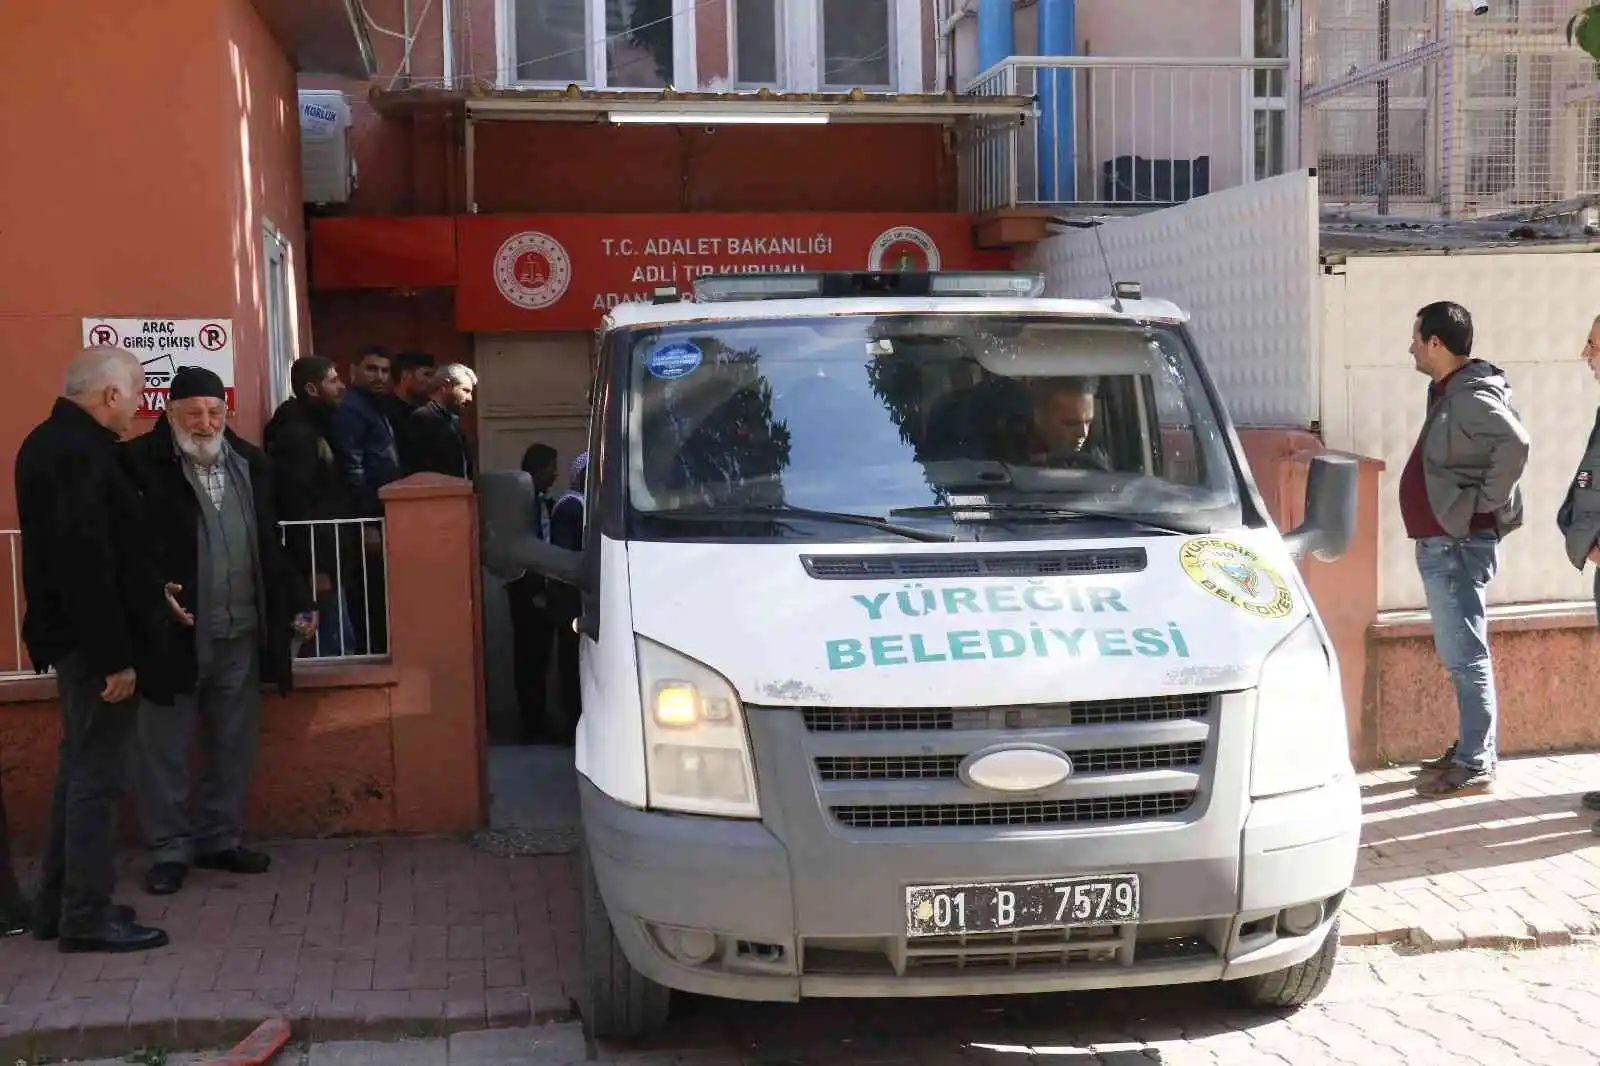 Adana’da kan davasına kurban giden gencin cenazesi teslim alındı
